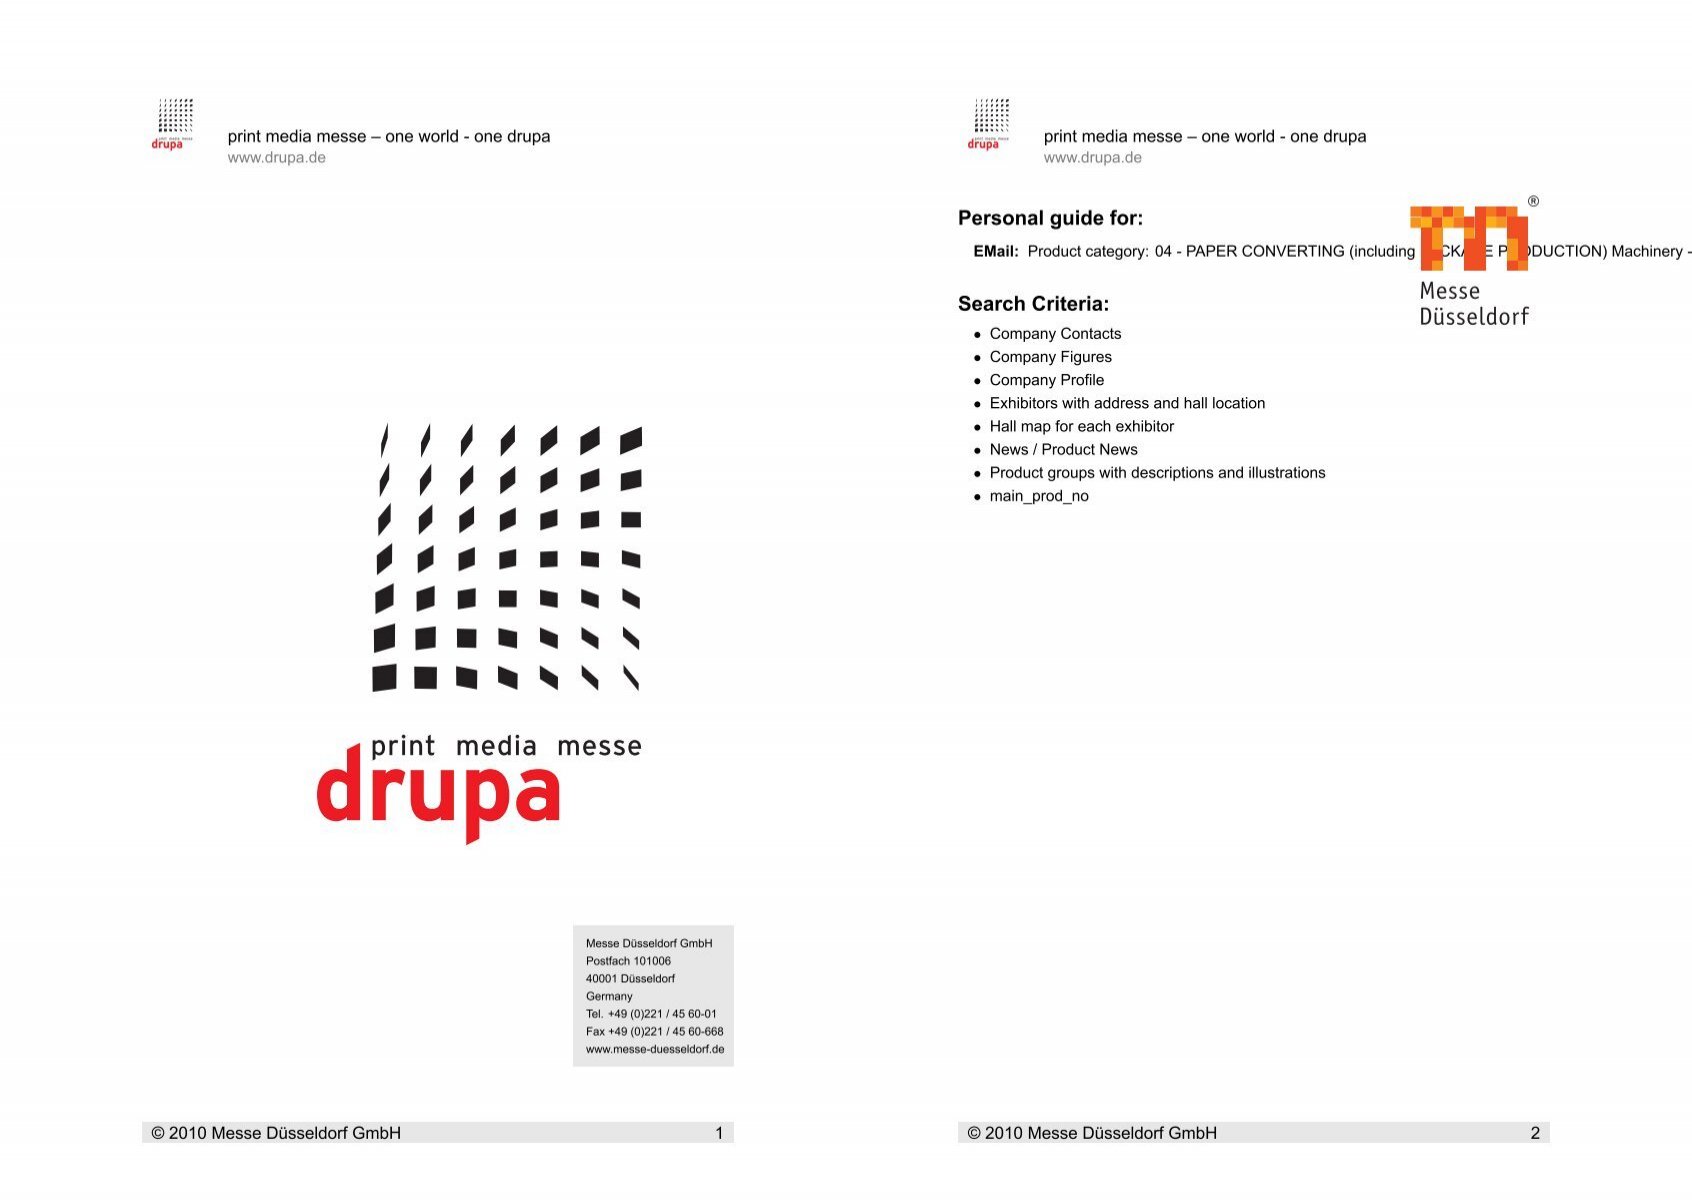 Personal guide for: Search Criteria: - Drupa